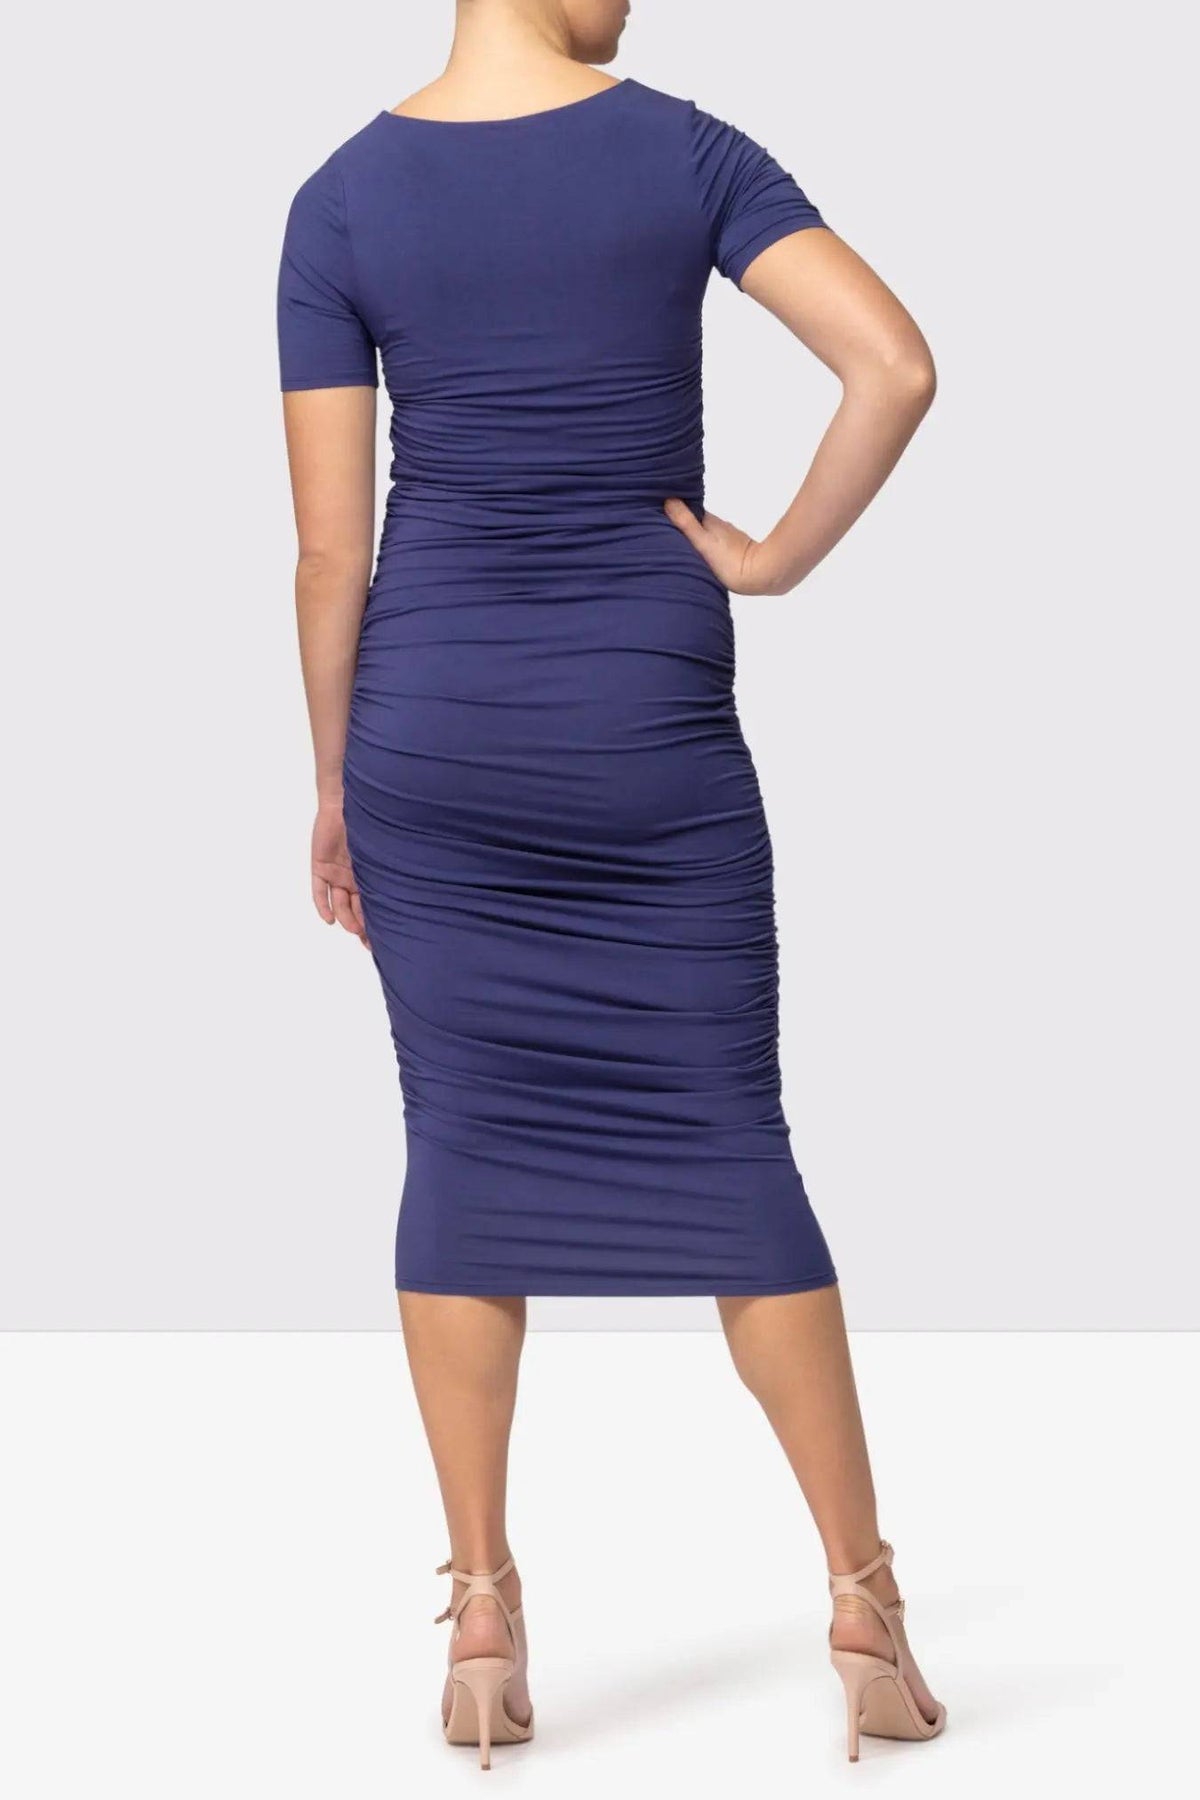 Embodycon™ Shaping Bodycon Dress - Ocean Blue